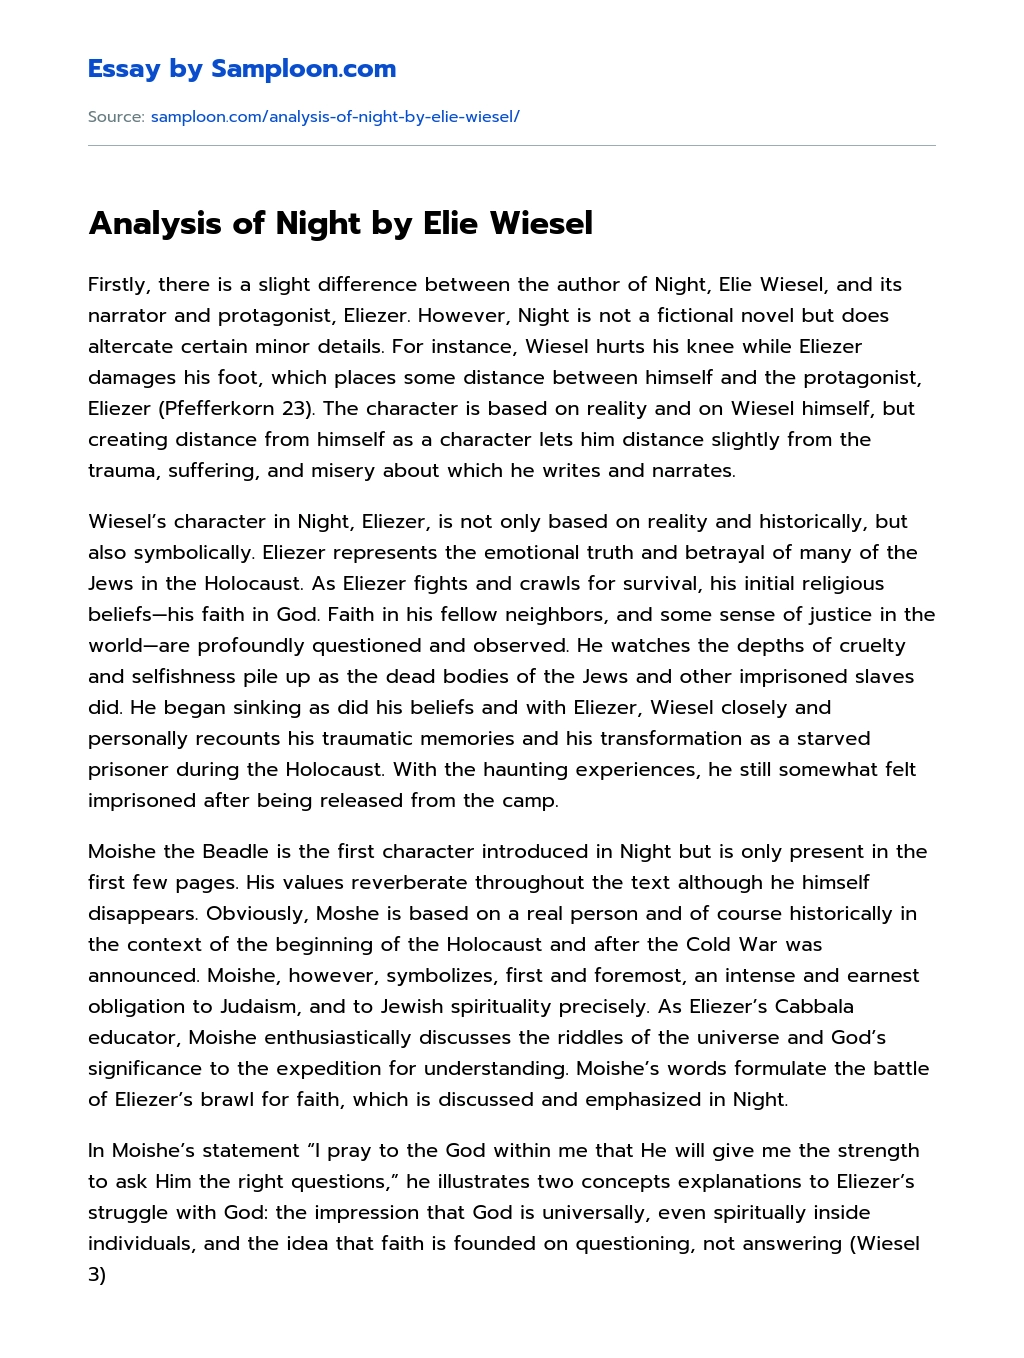 Analysis of Night by Elie Wiesel essay